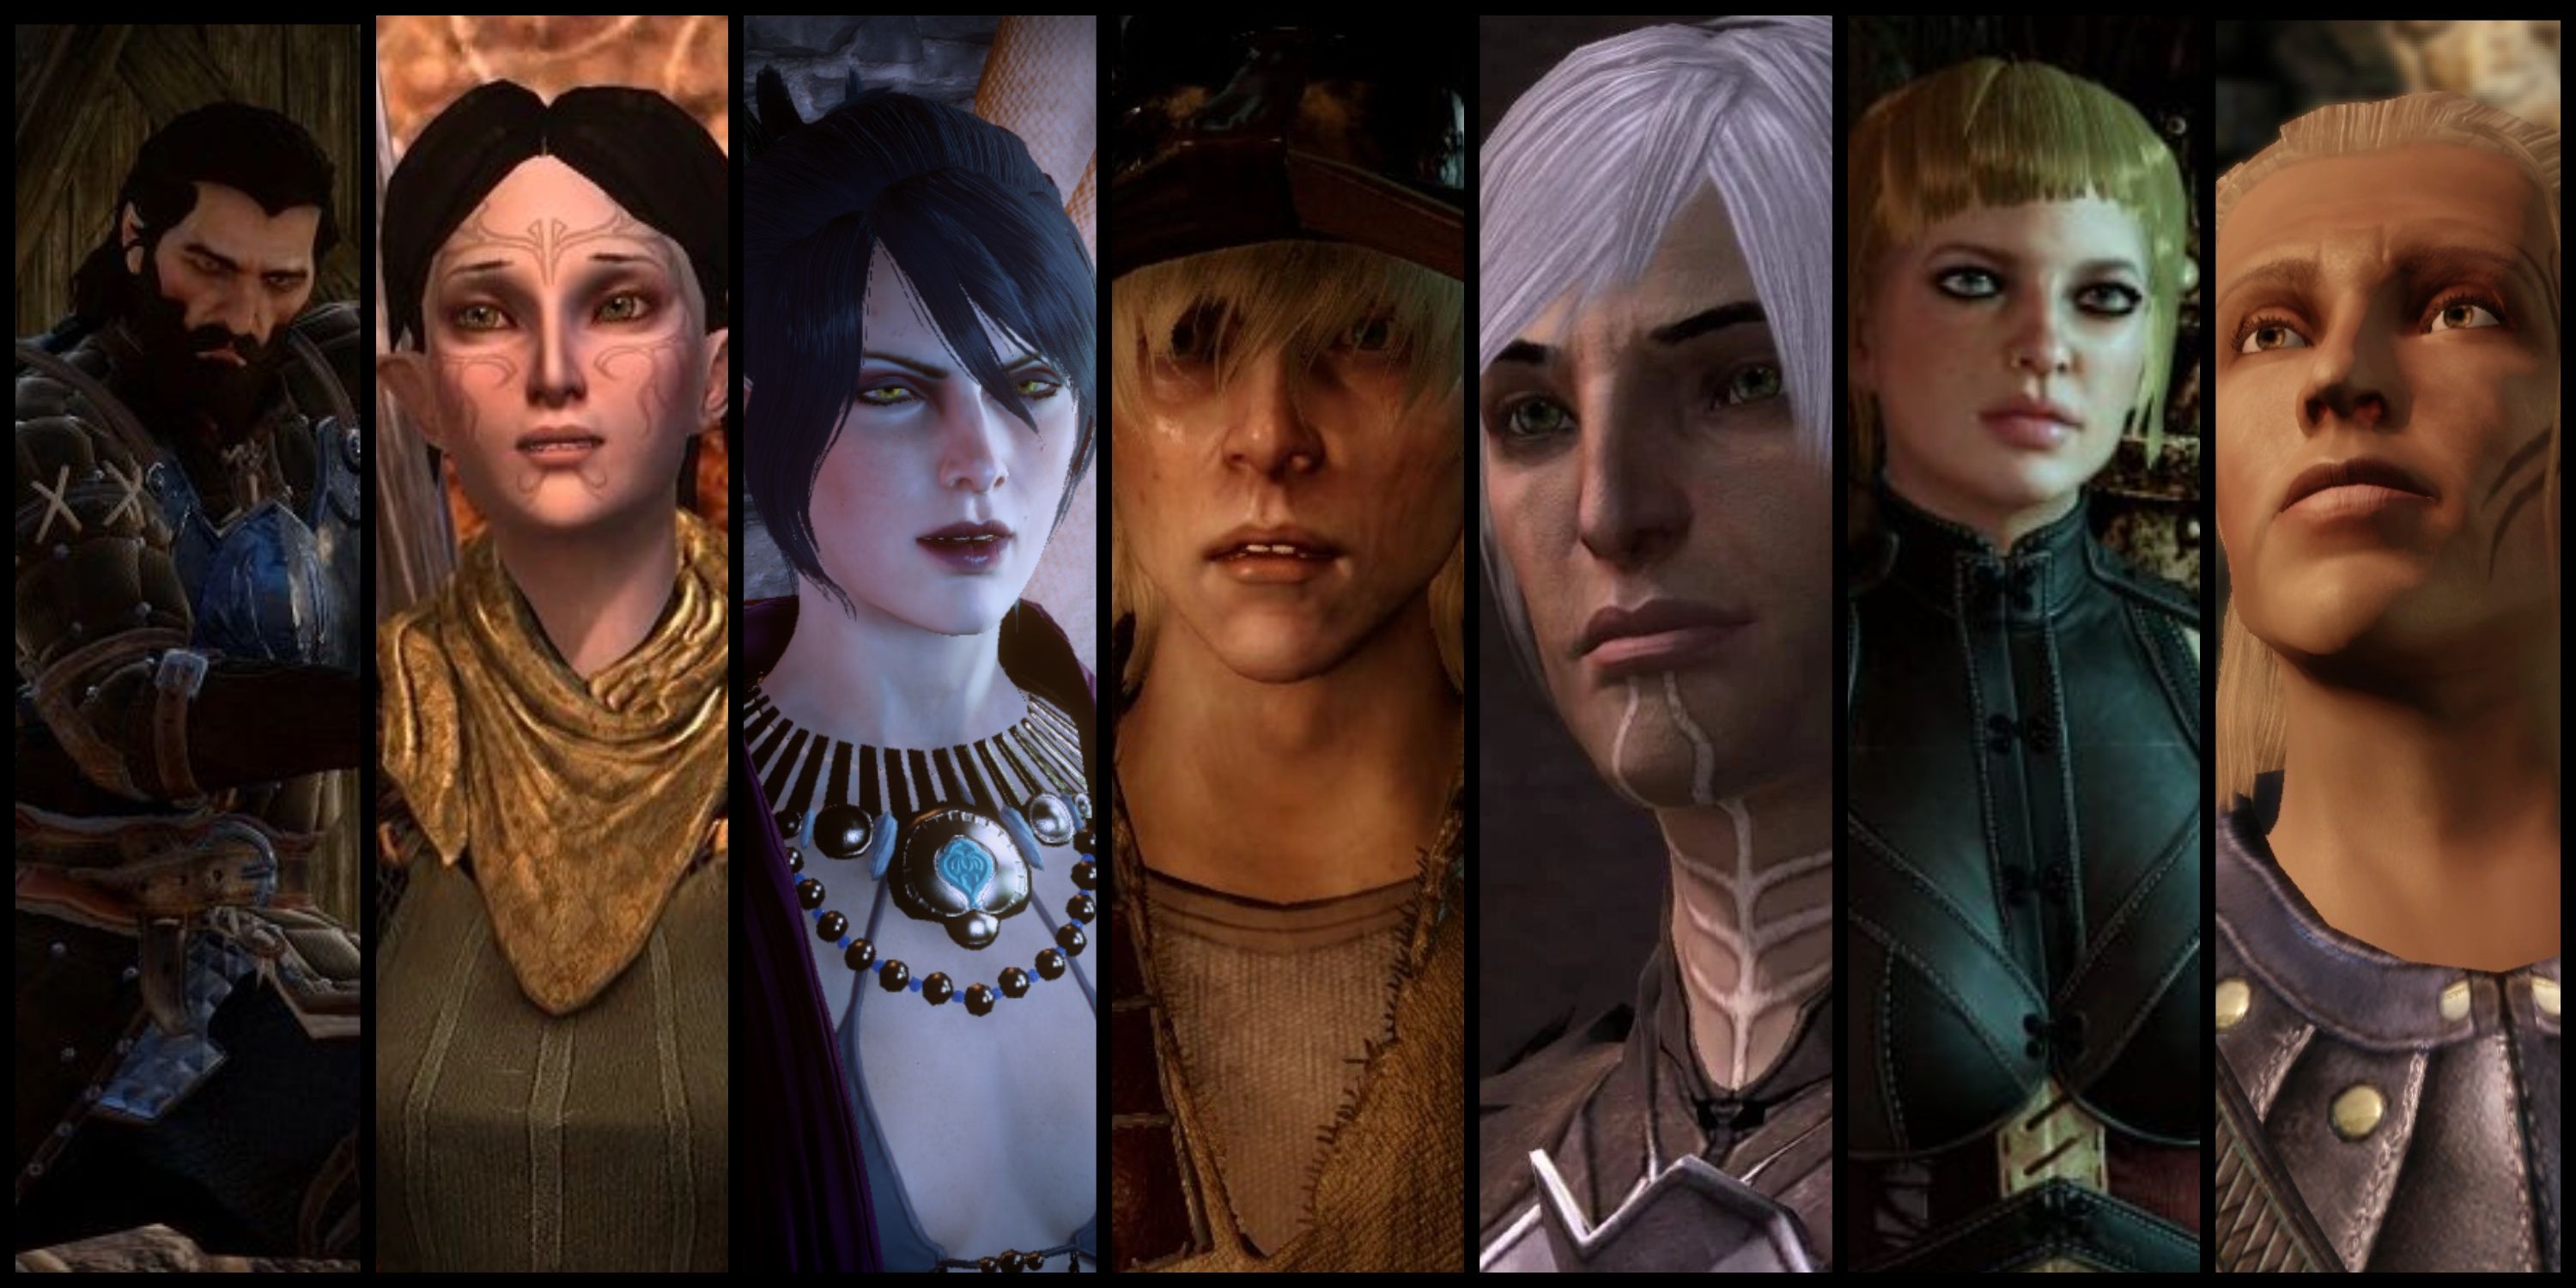 Dragon Age characters Blackwall, Merrill, Morrigan, Cole, Fenris, Sera, and Zevran